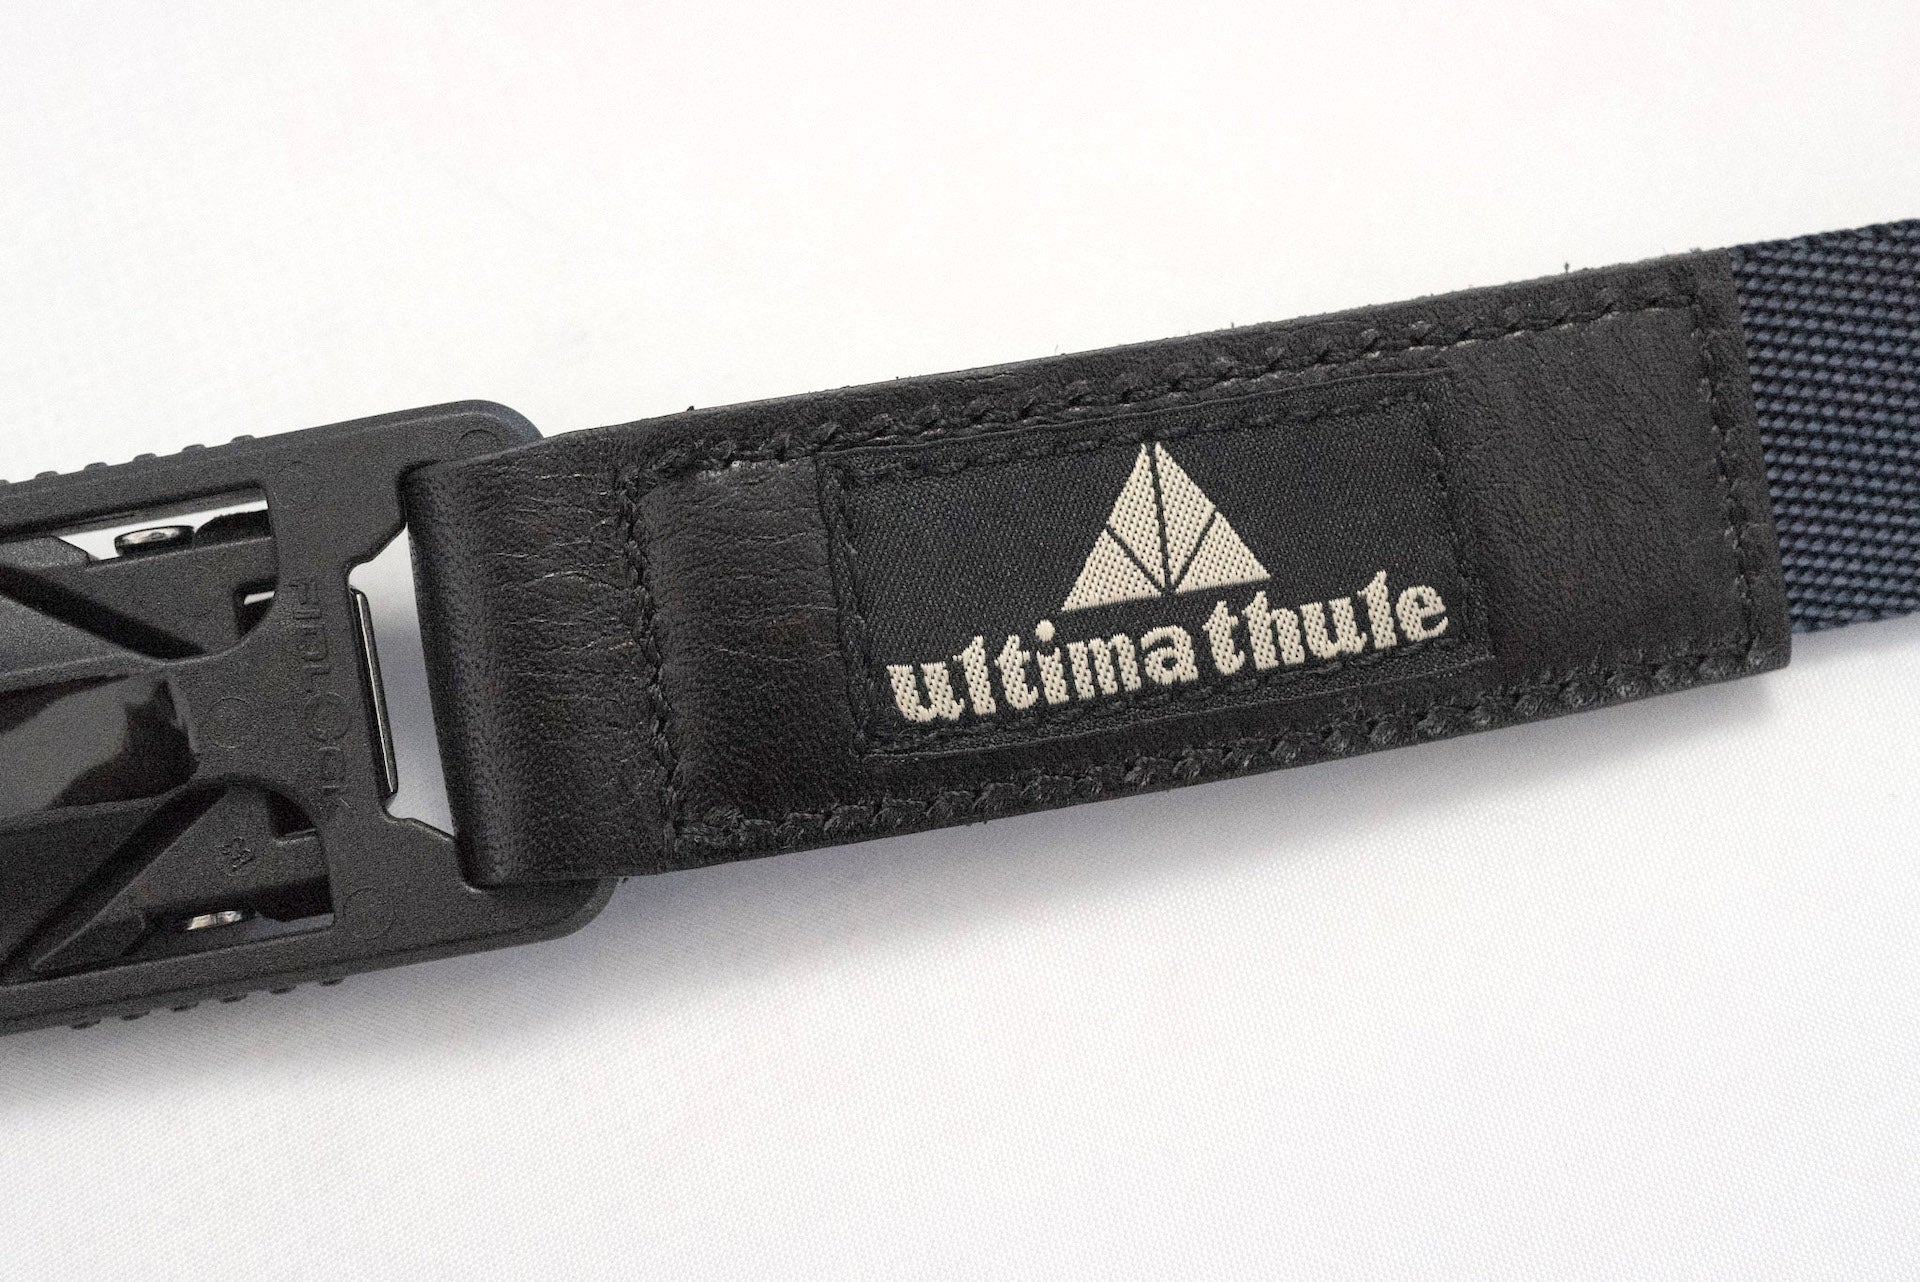 Ultima Thule by Freewheelers "V-Magneto" Belt (Navy)